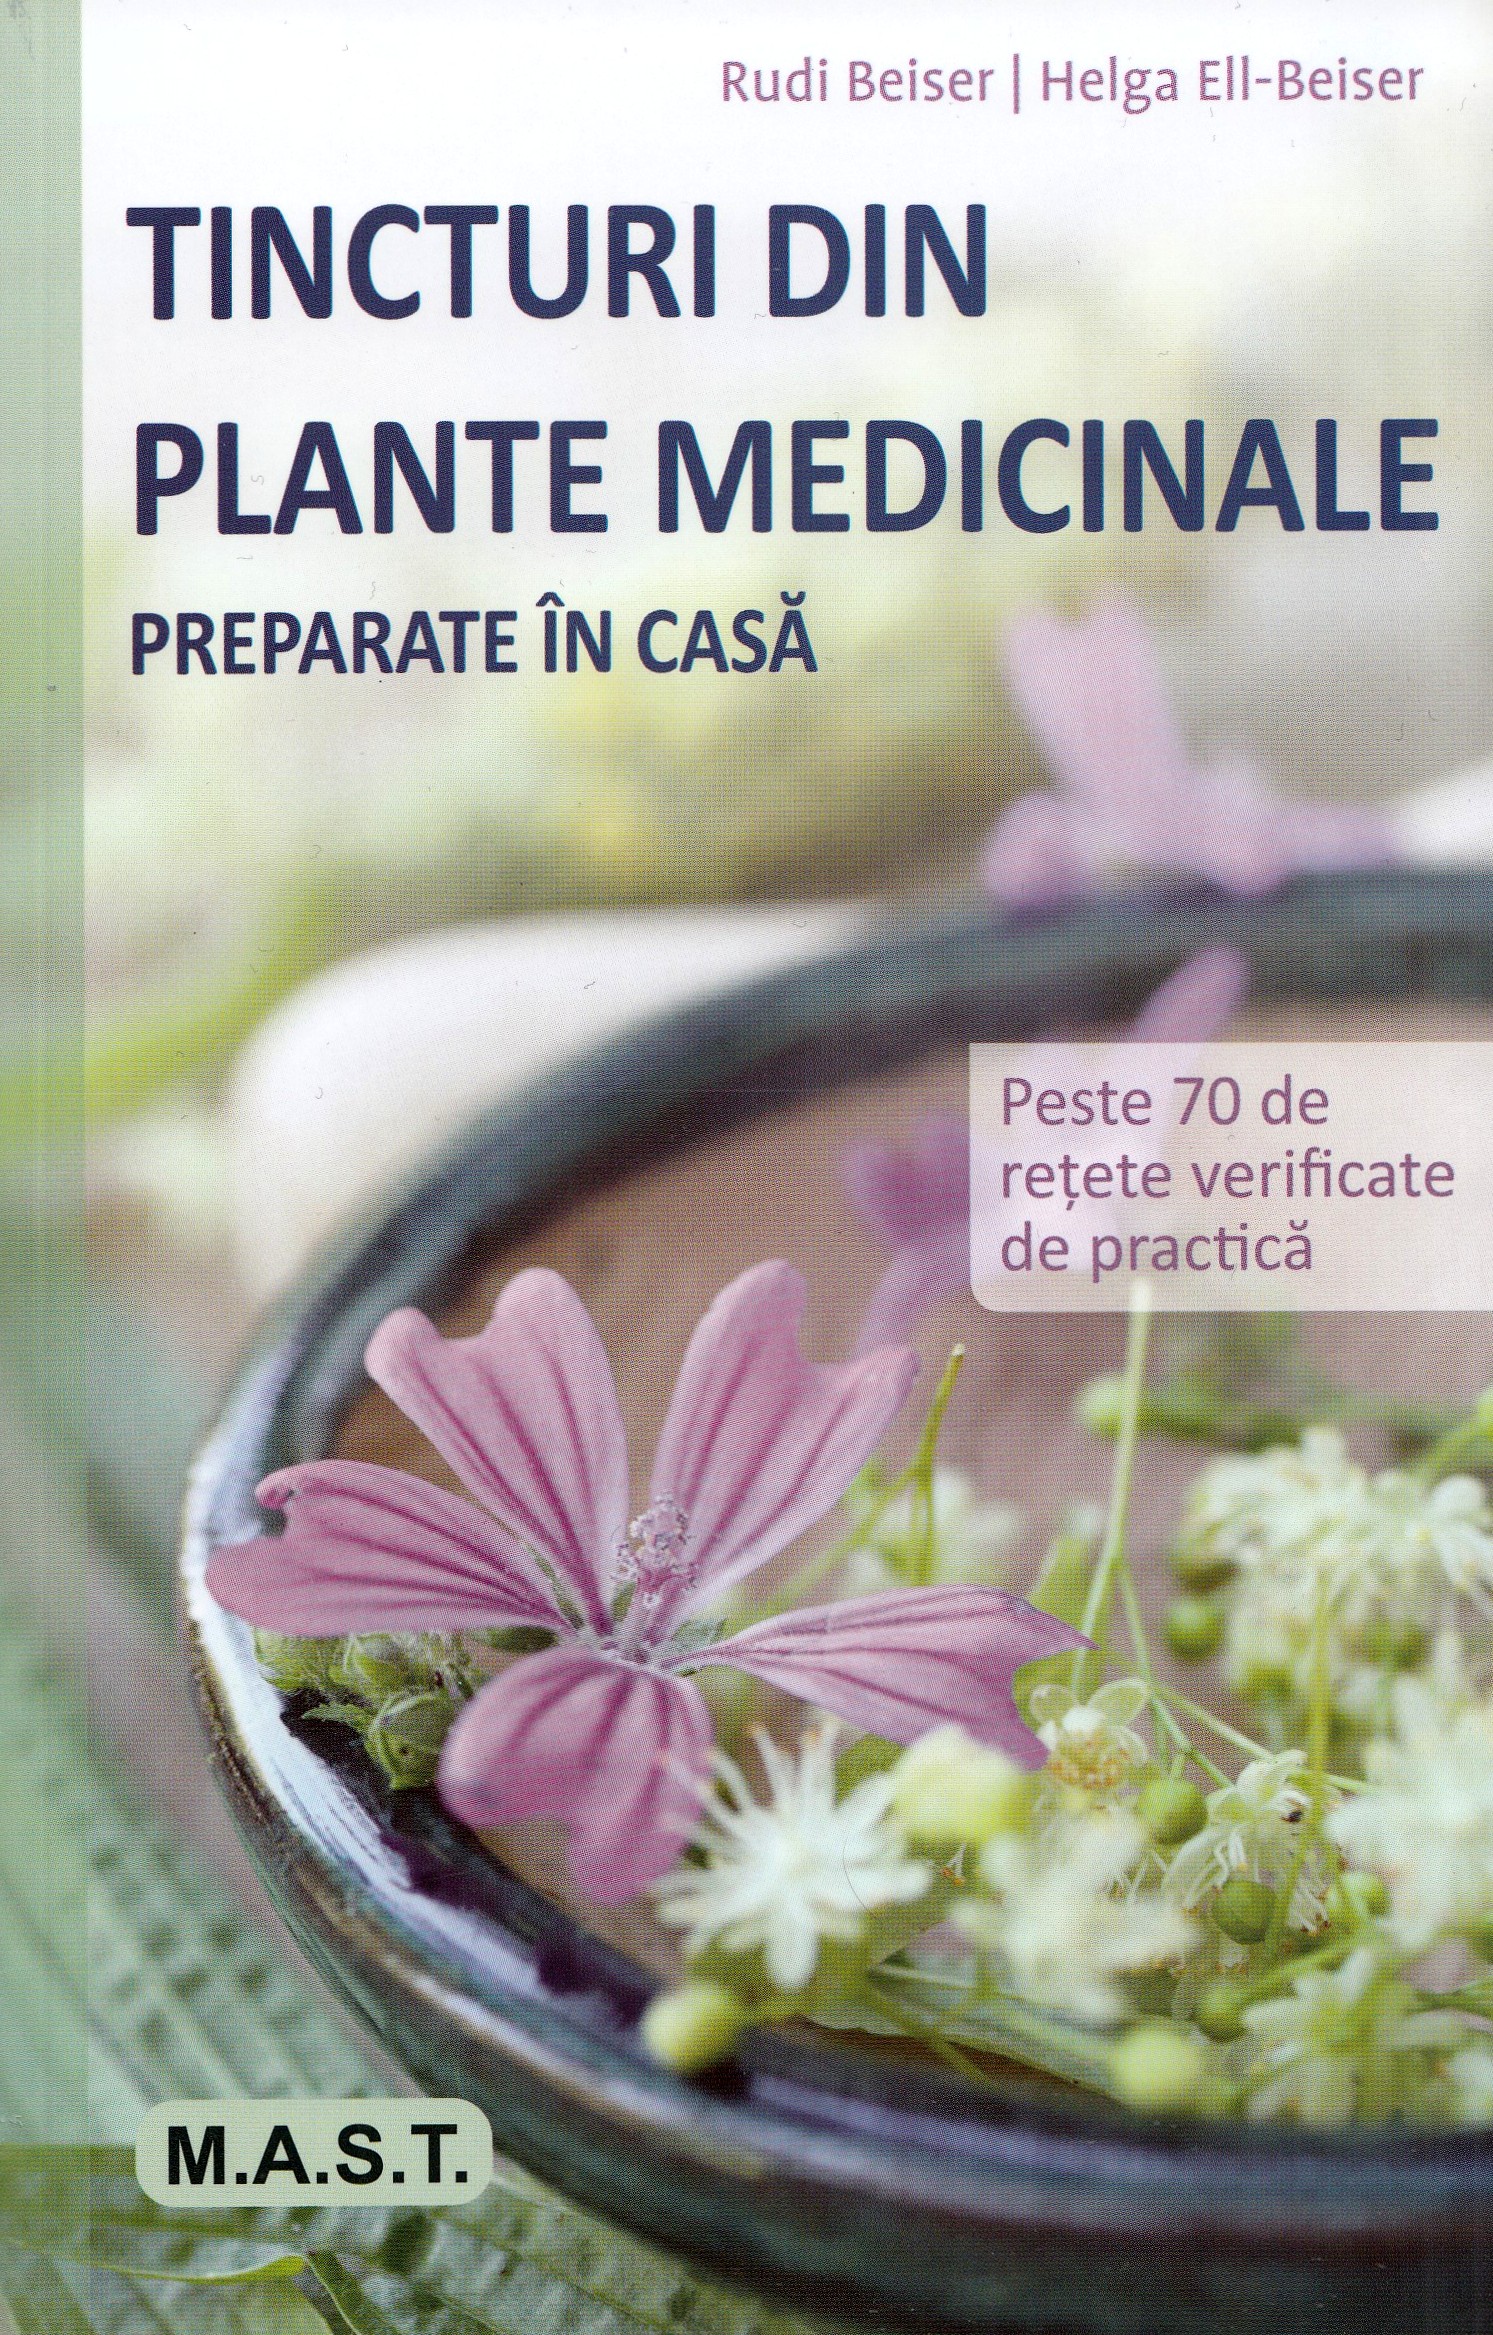 Tincturi din plante medicinale preparate in casa - Rudi Beiser, Helga Ell-Beiser